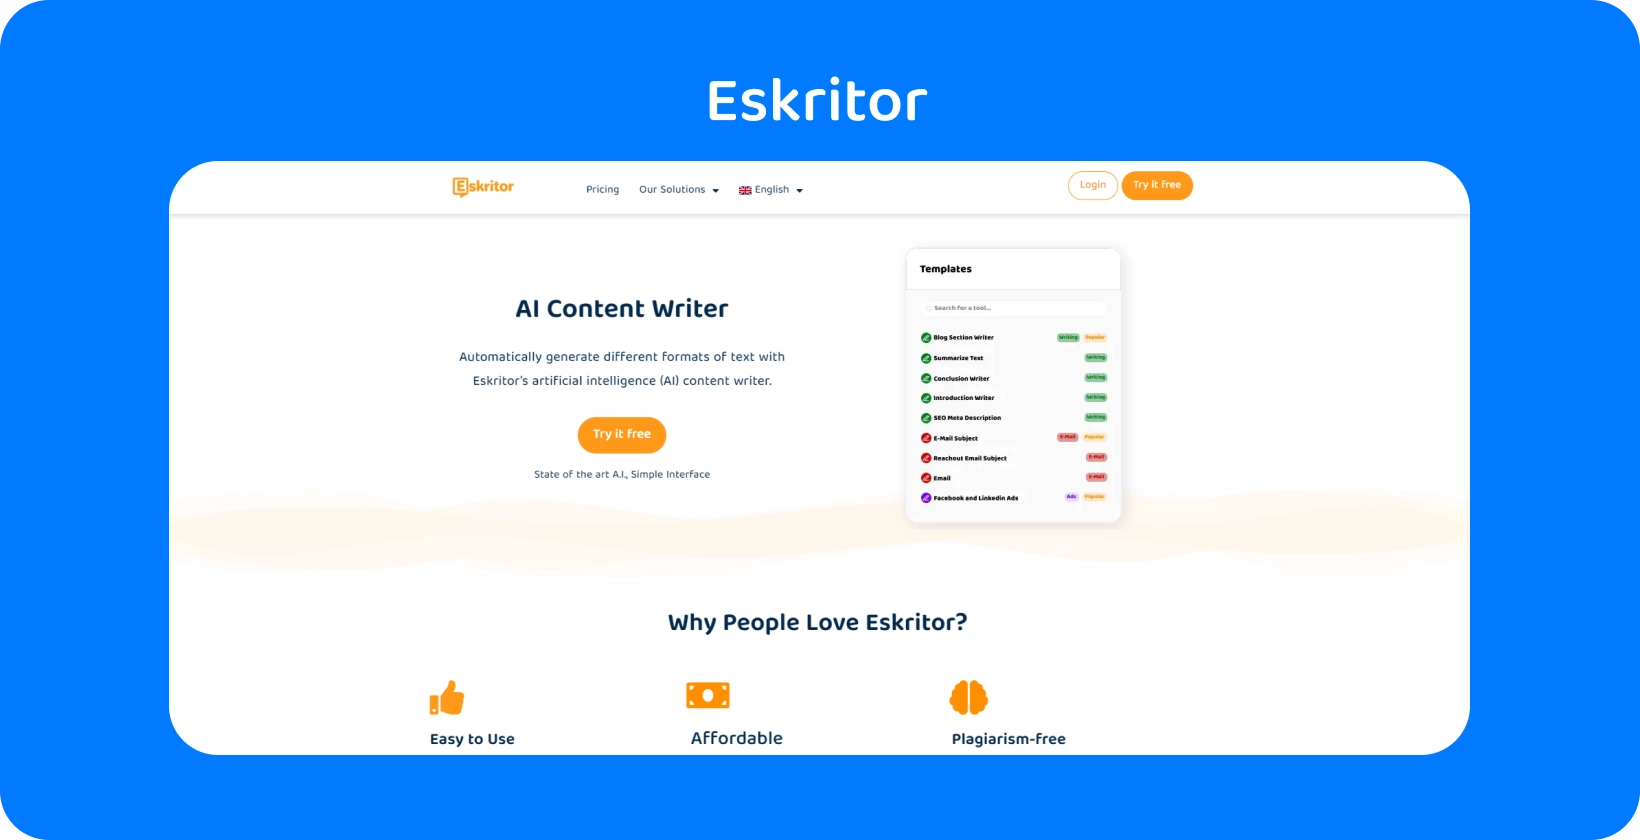 Eskritor biểu ngữ trang chủ, nhấn mạnh trợ lý viết pháp lý được hỗ trợ bởi AI cho luật sư.